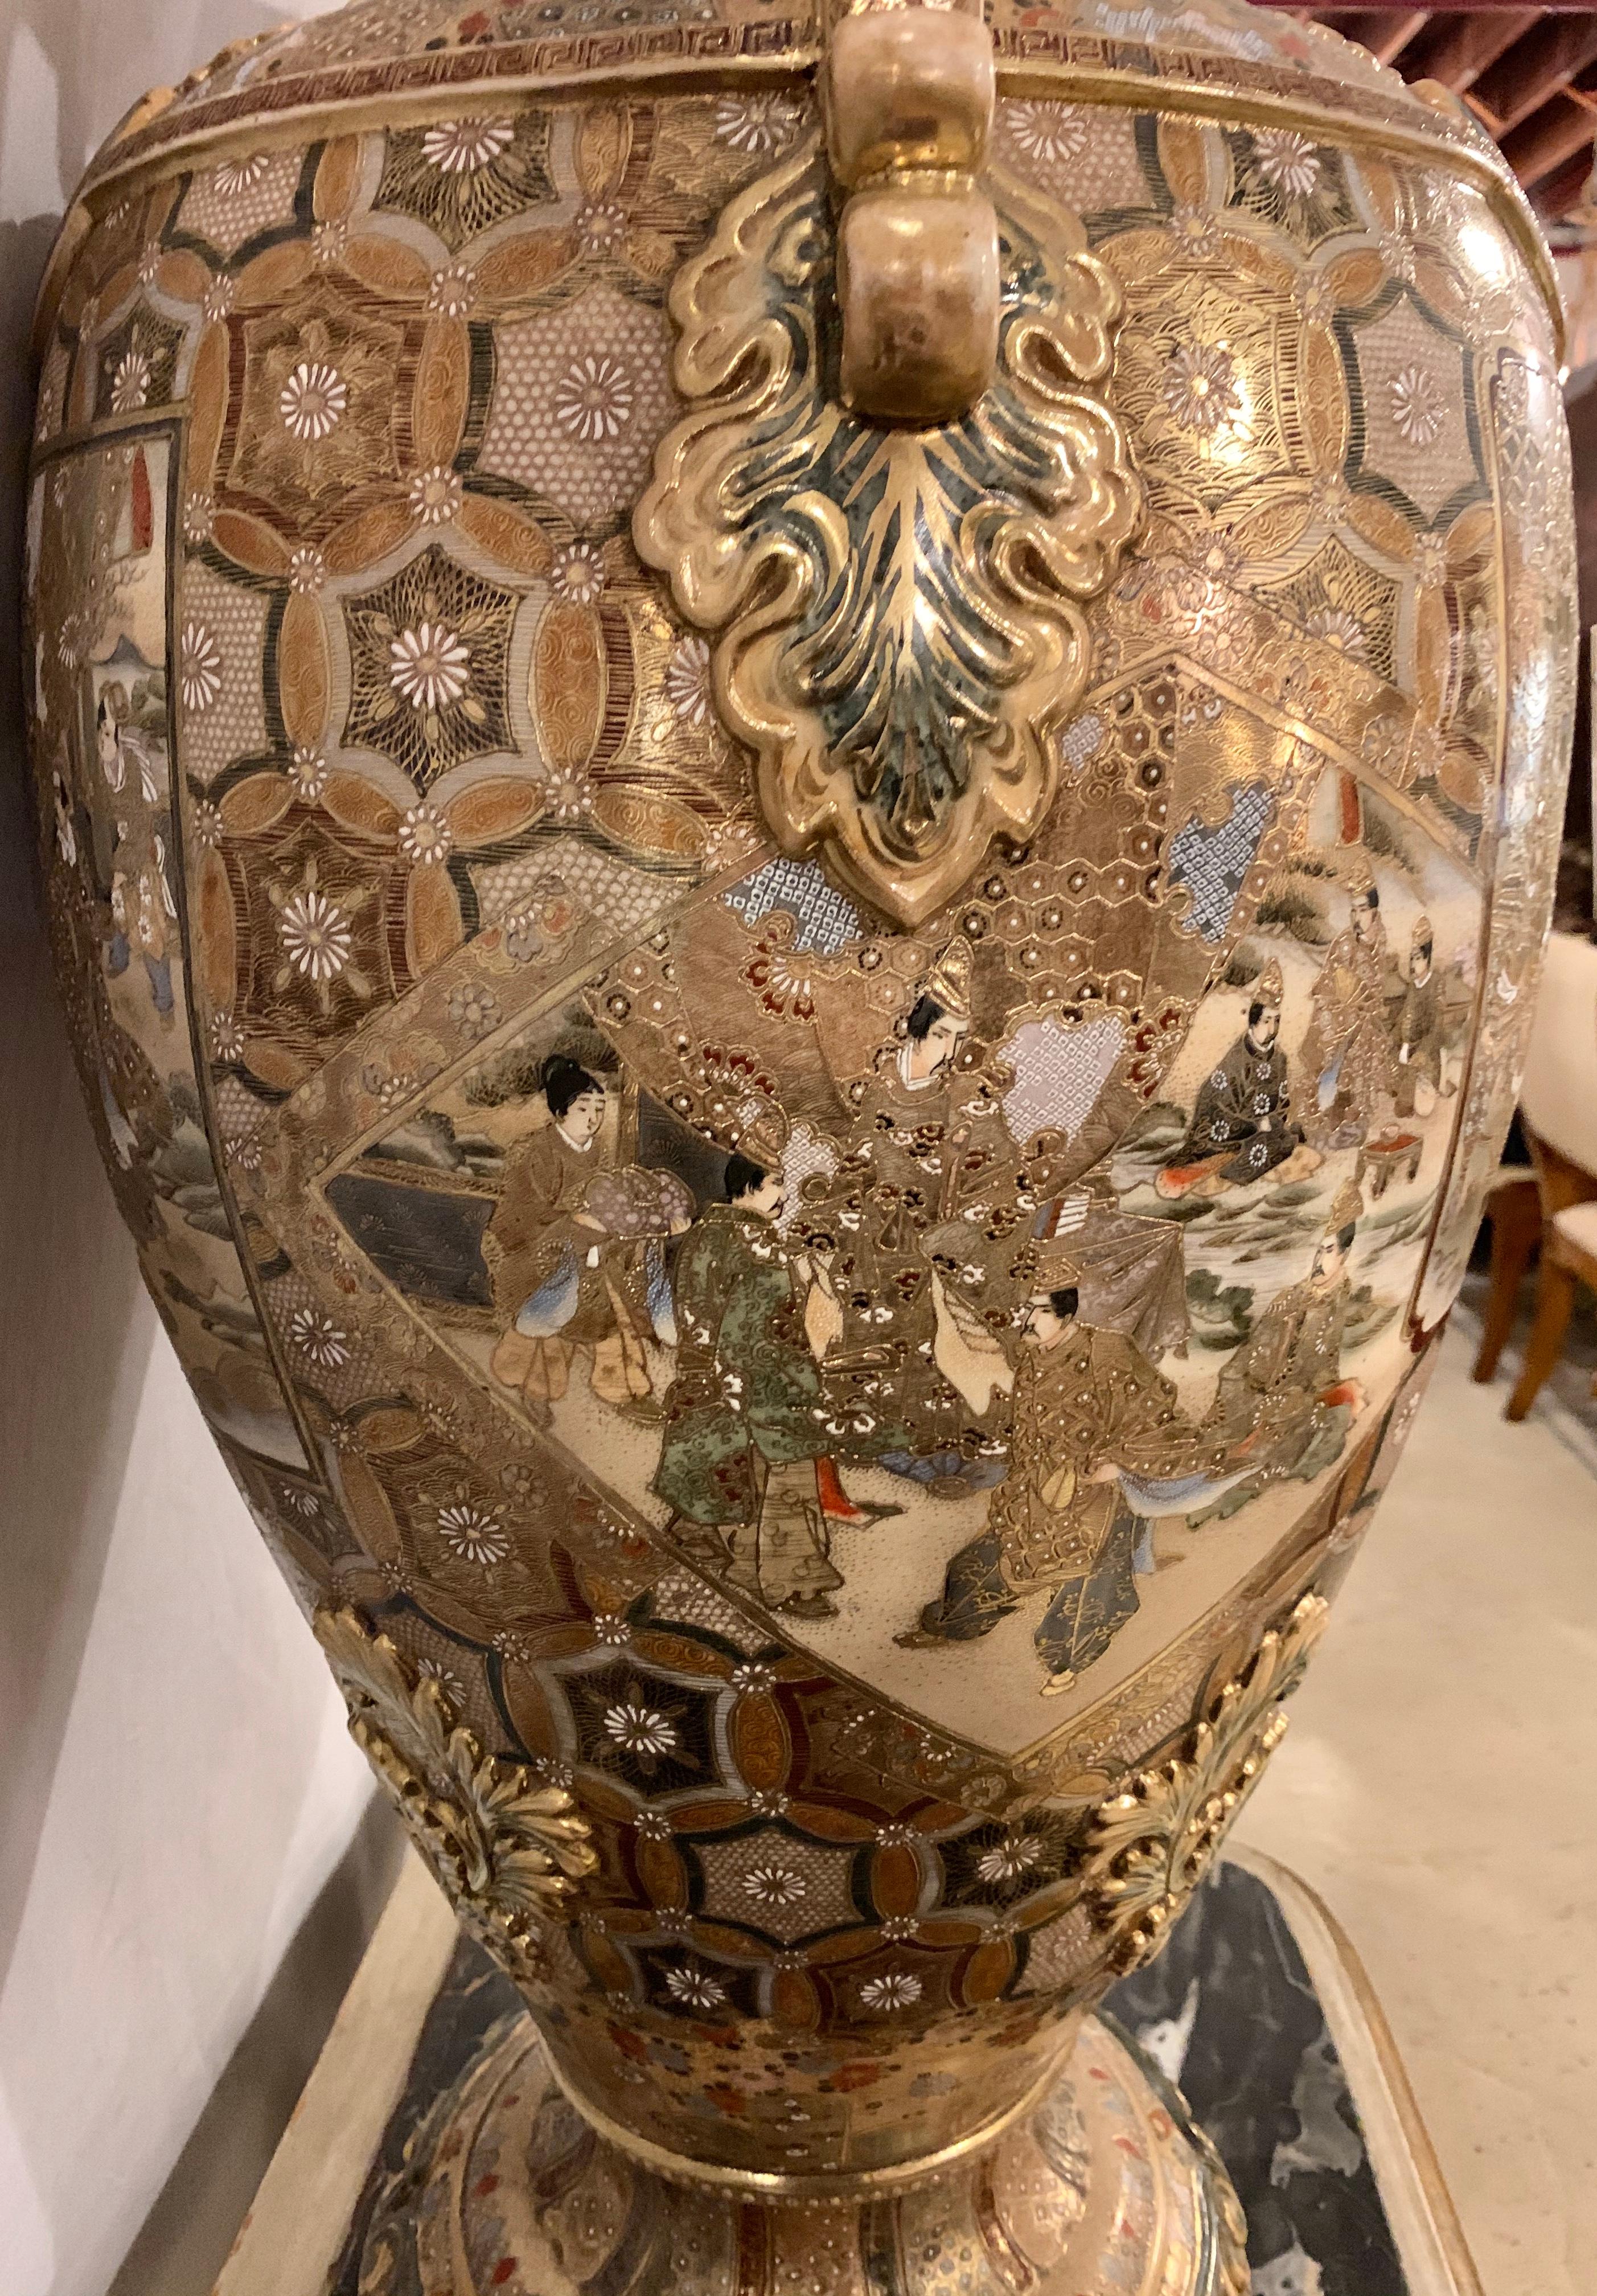 Satsuma Thousand Face Vase or Urn Palace Sized Twin Handled 5